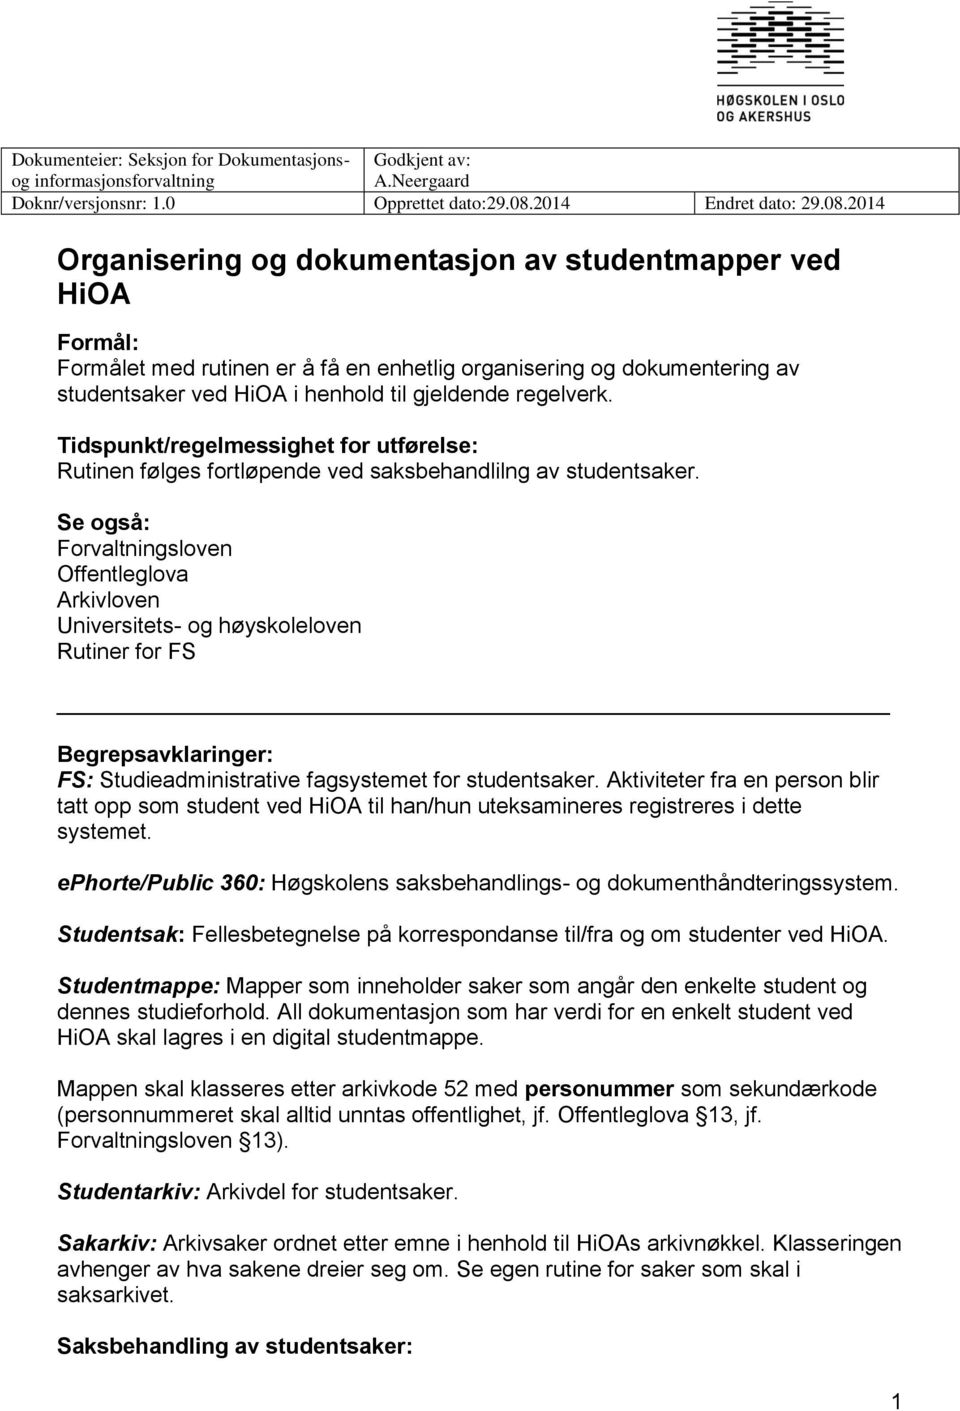 2014 Organisering og dokumentasjon av studentmapper ved HiOA Formål: Formålet med rutinen er å få en enhetlig organisering og dokumentering av studentsaker ved HiOA i henhold til gjeldende regelverk.